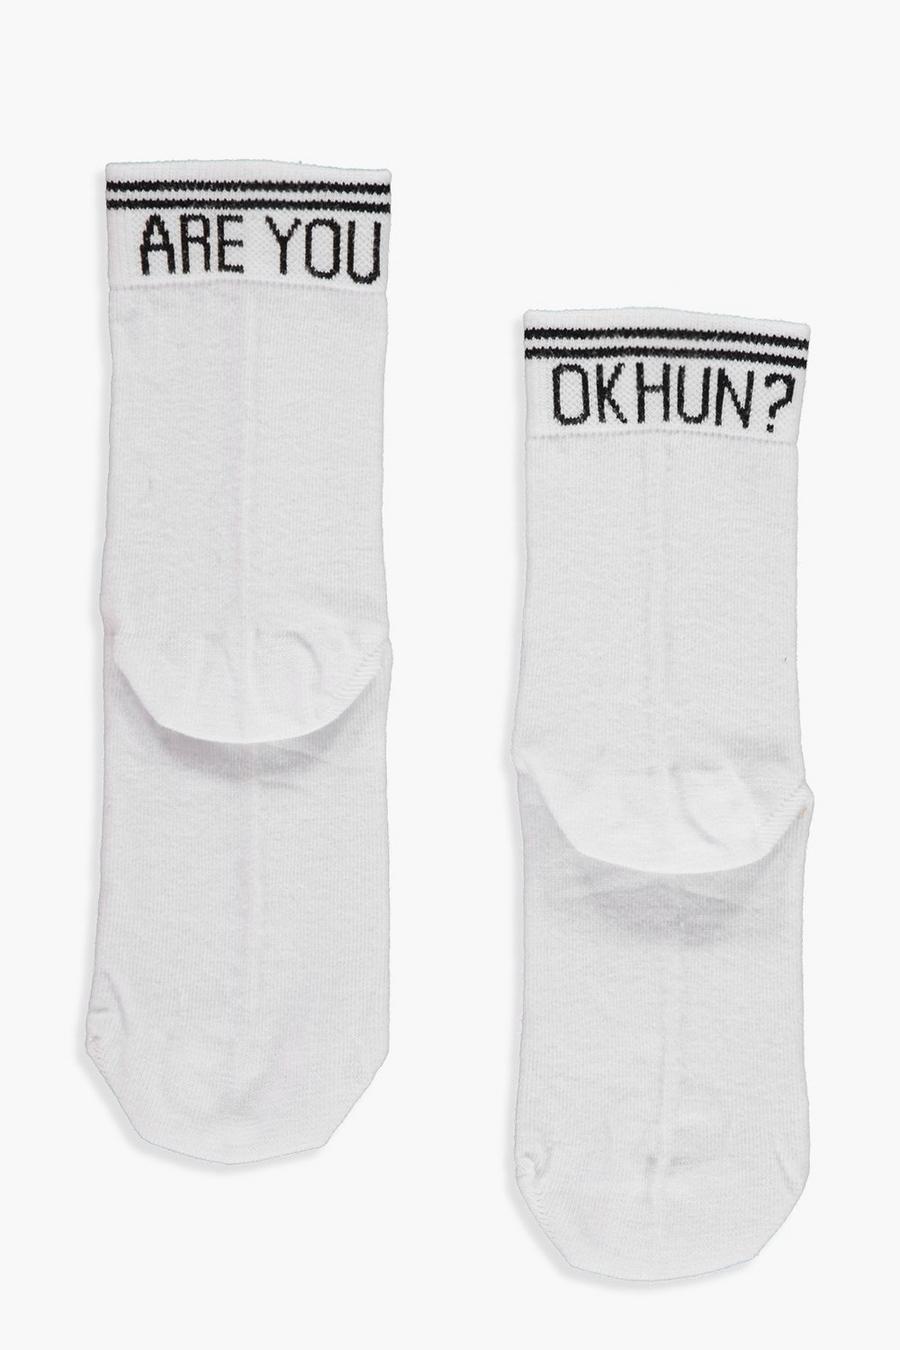 Socken mit Are You Ok Hun?   Slogan, Weiß white